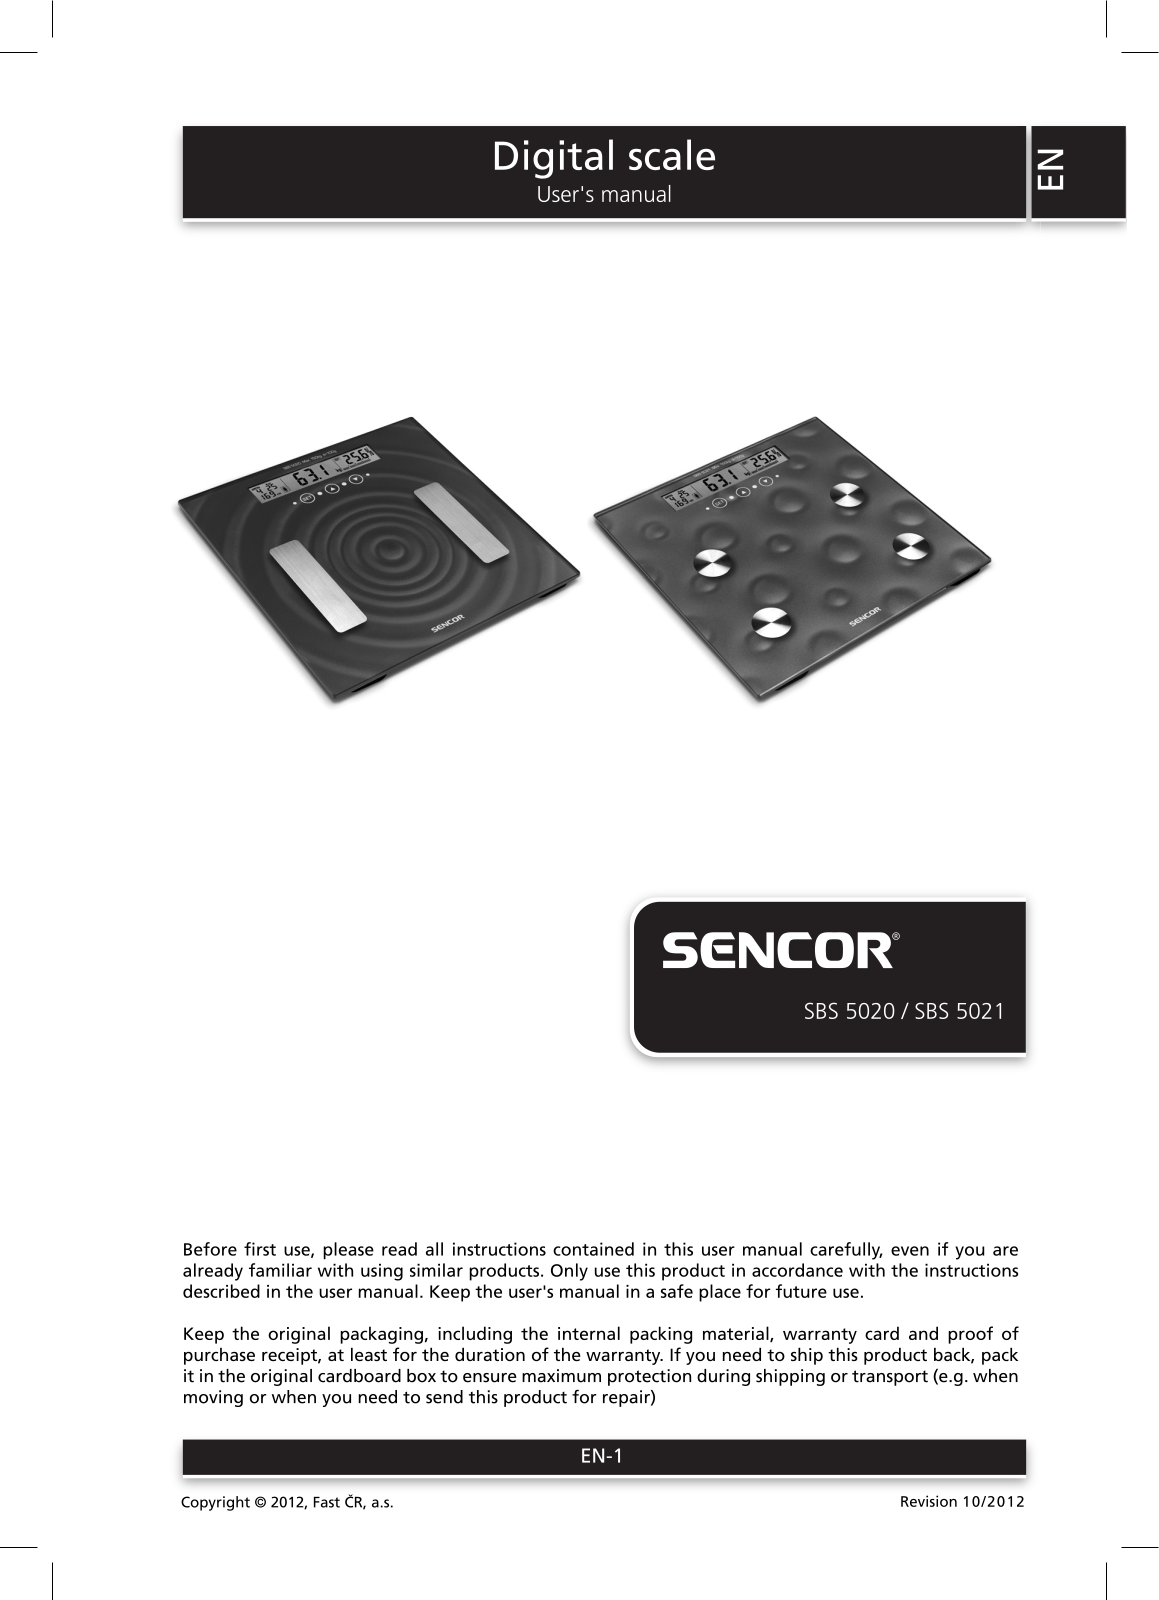 Sencor SBS 5020 operation manual